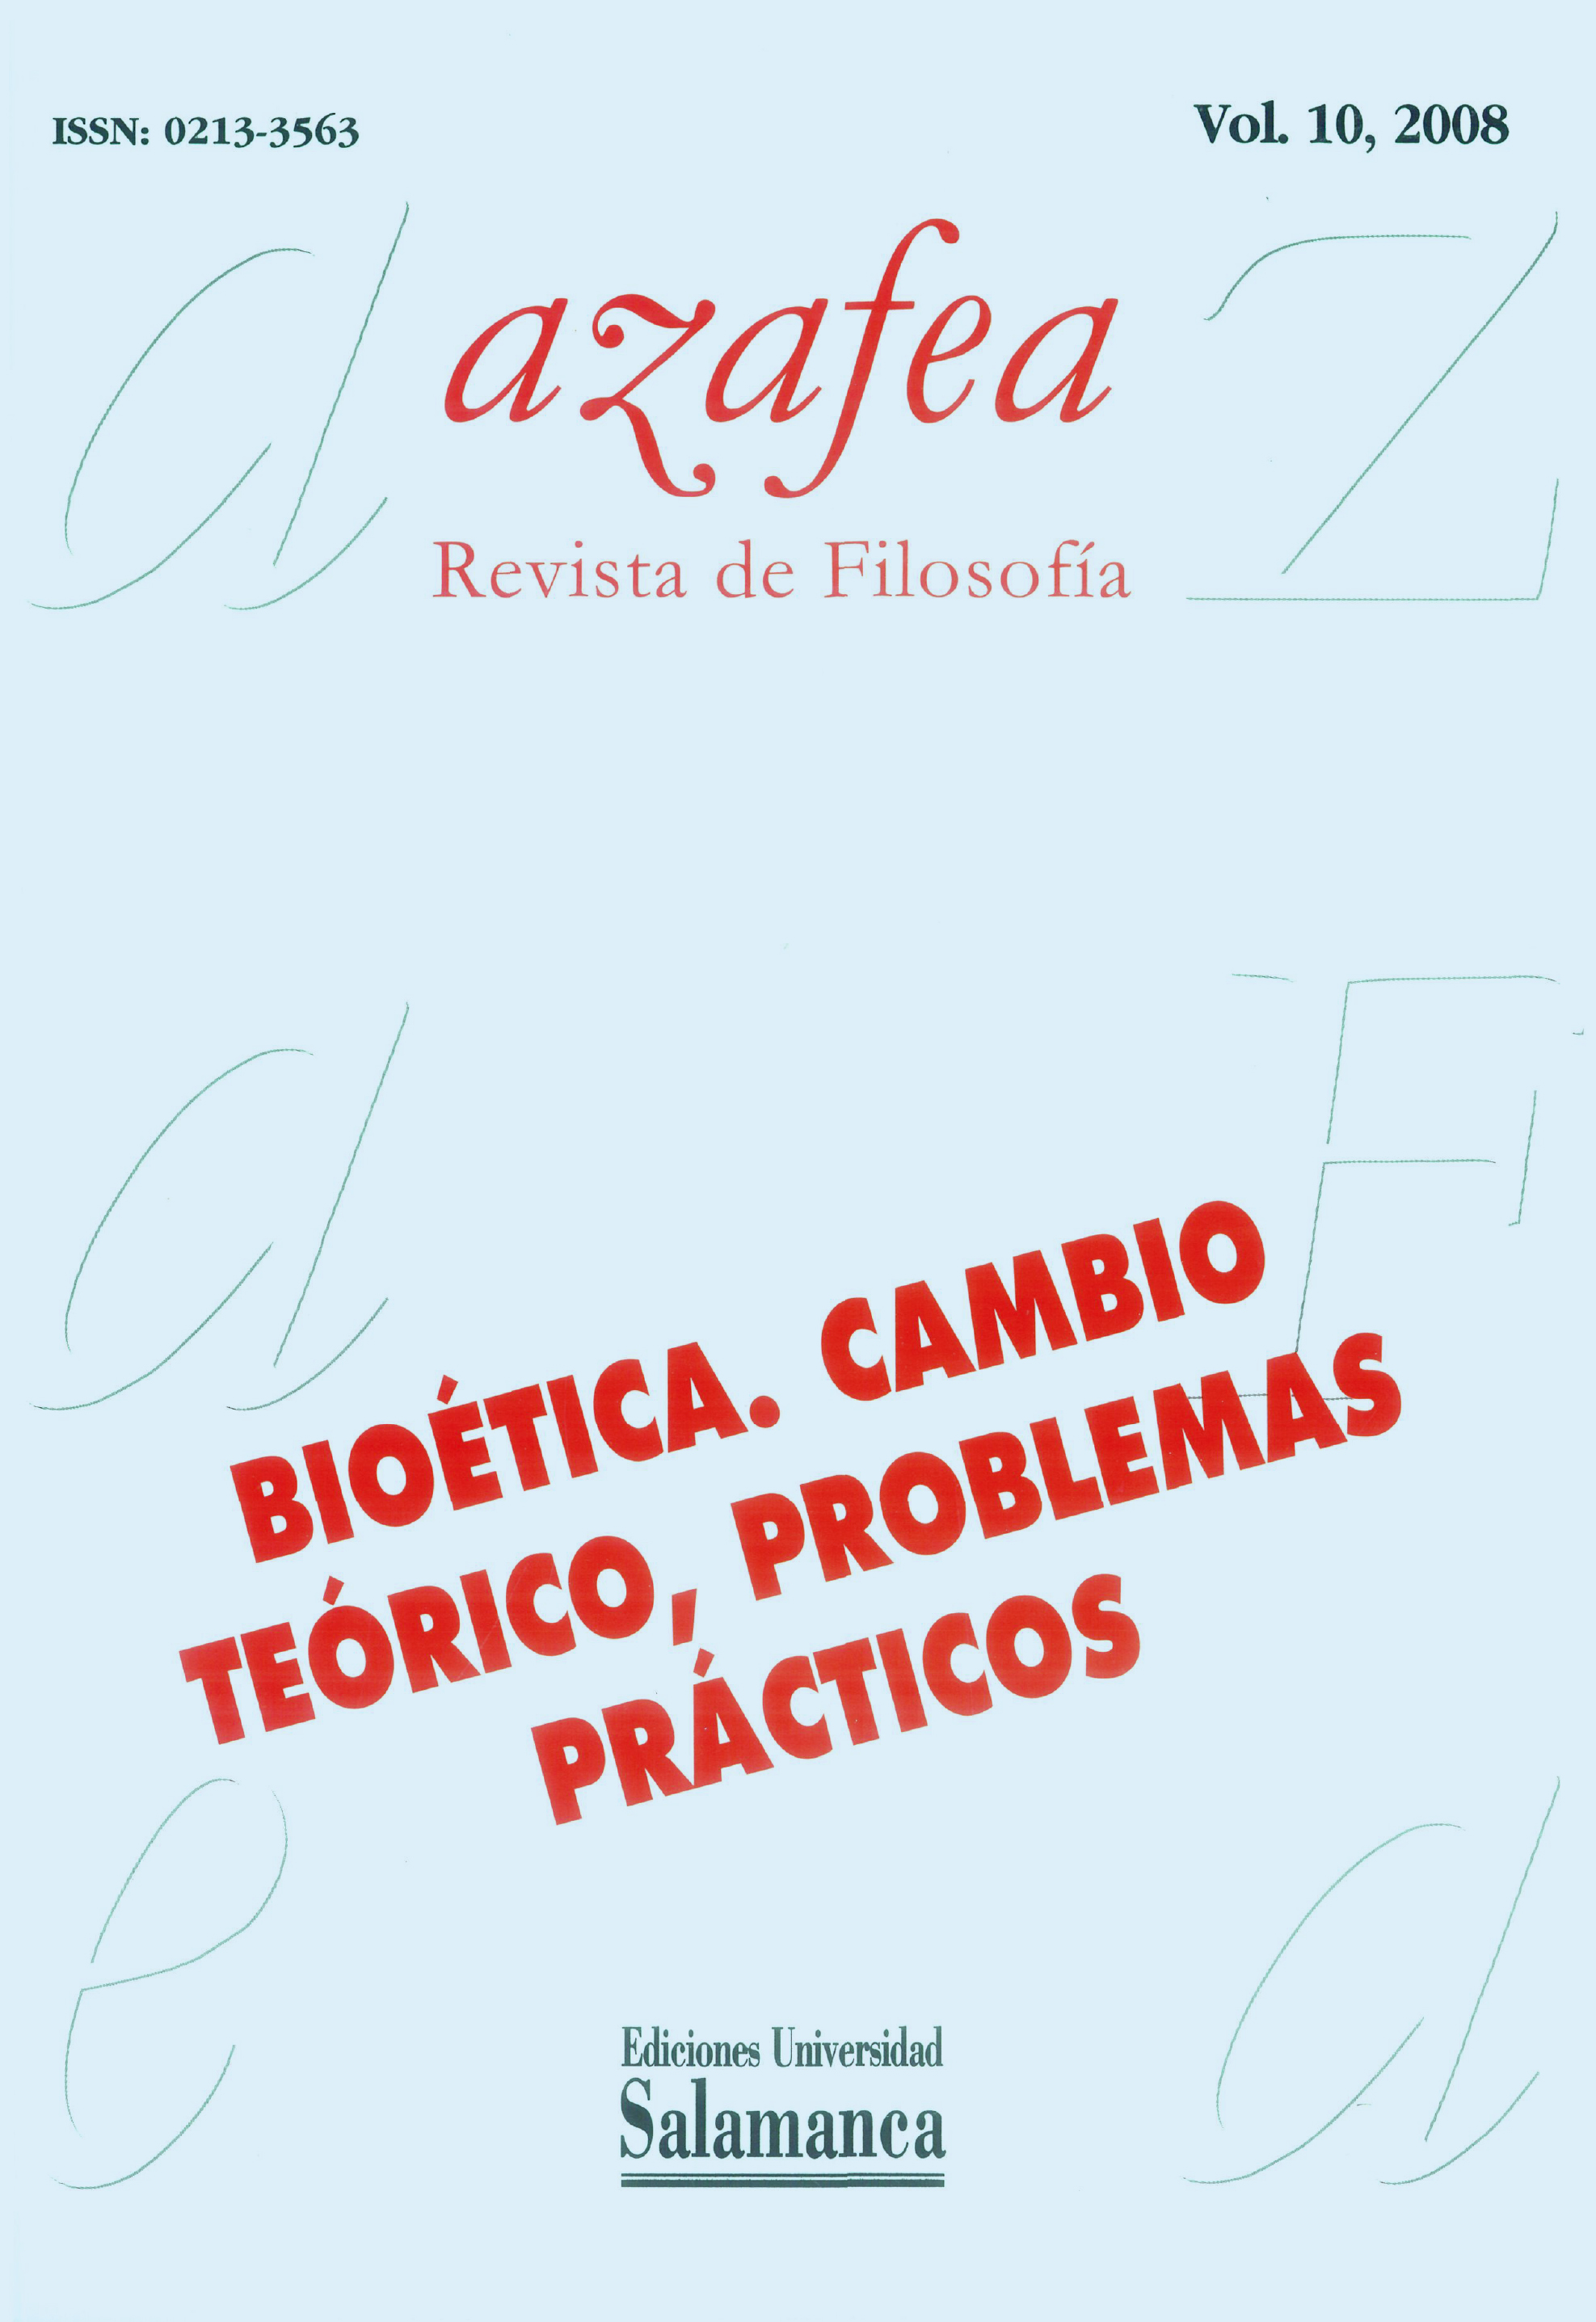                         Ver Vol. 10 (2008): Bioética. Cambio teórico, problemas prácticos
                    